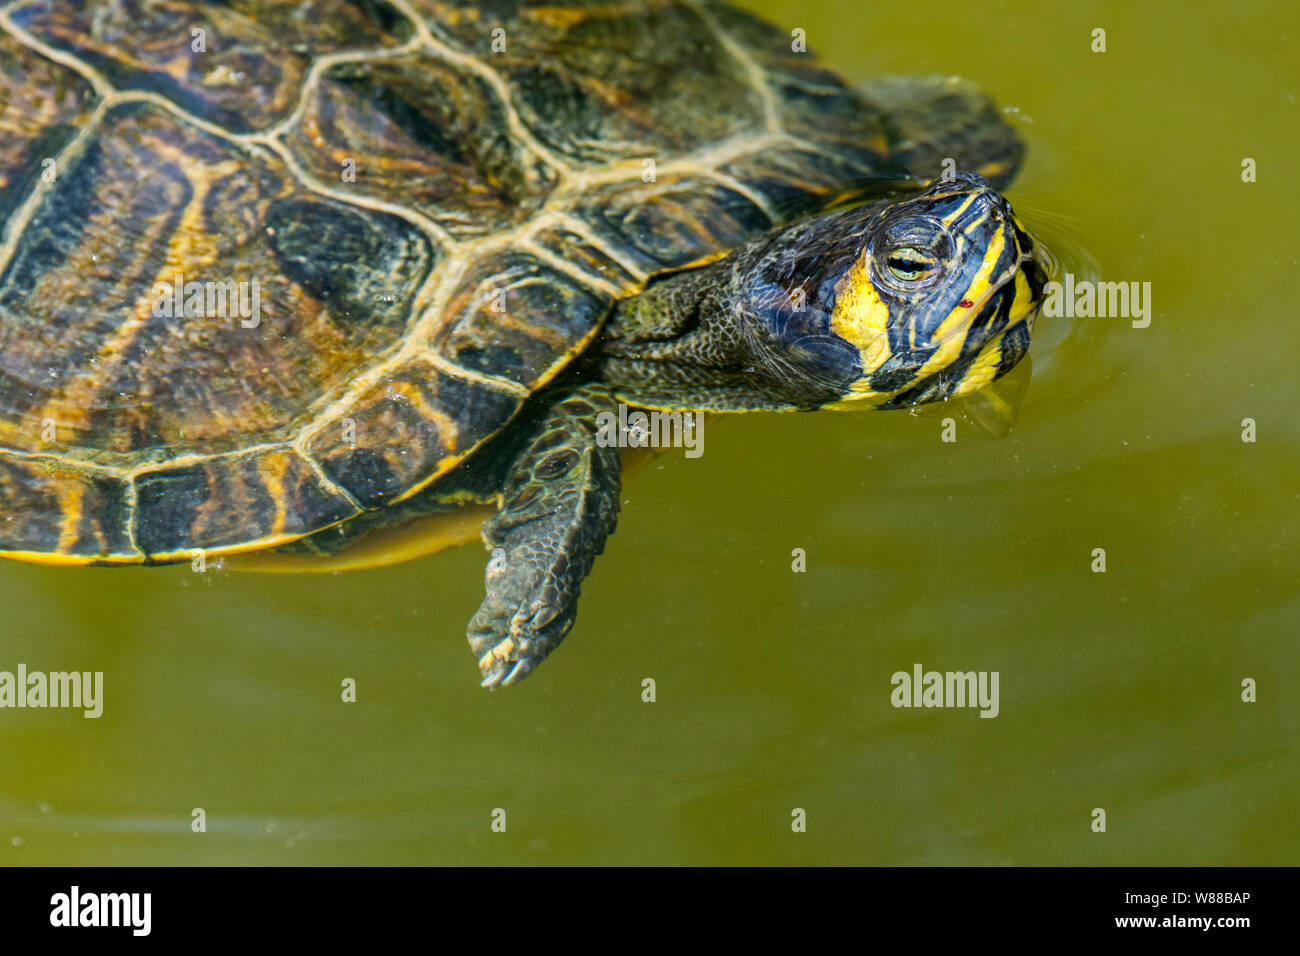 A becco giallo cursore (Trachemys scripta scripta) nuoto in stagno, terra e acqua turtle nativo del sud-est degli Stati Uniti Foto Stock